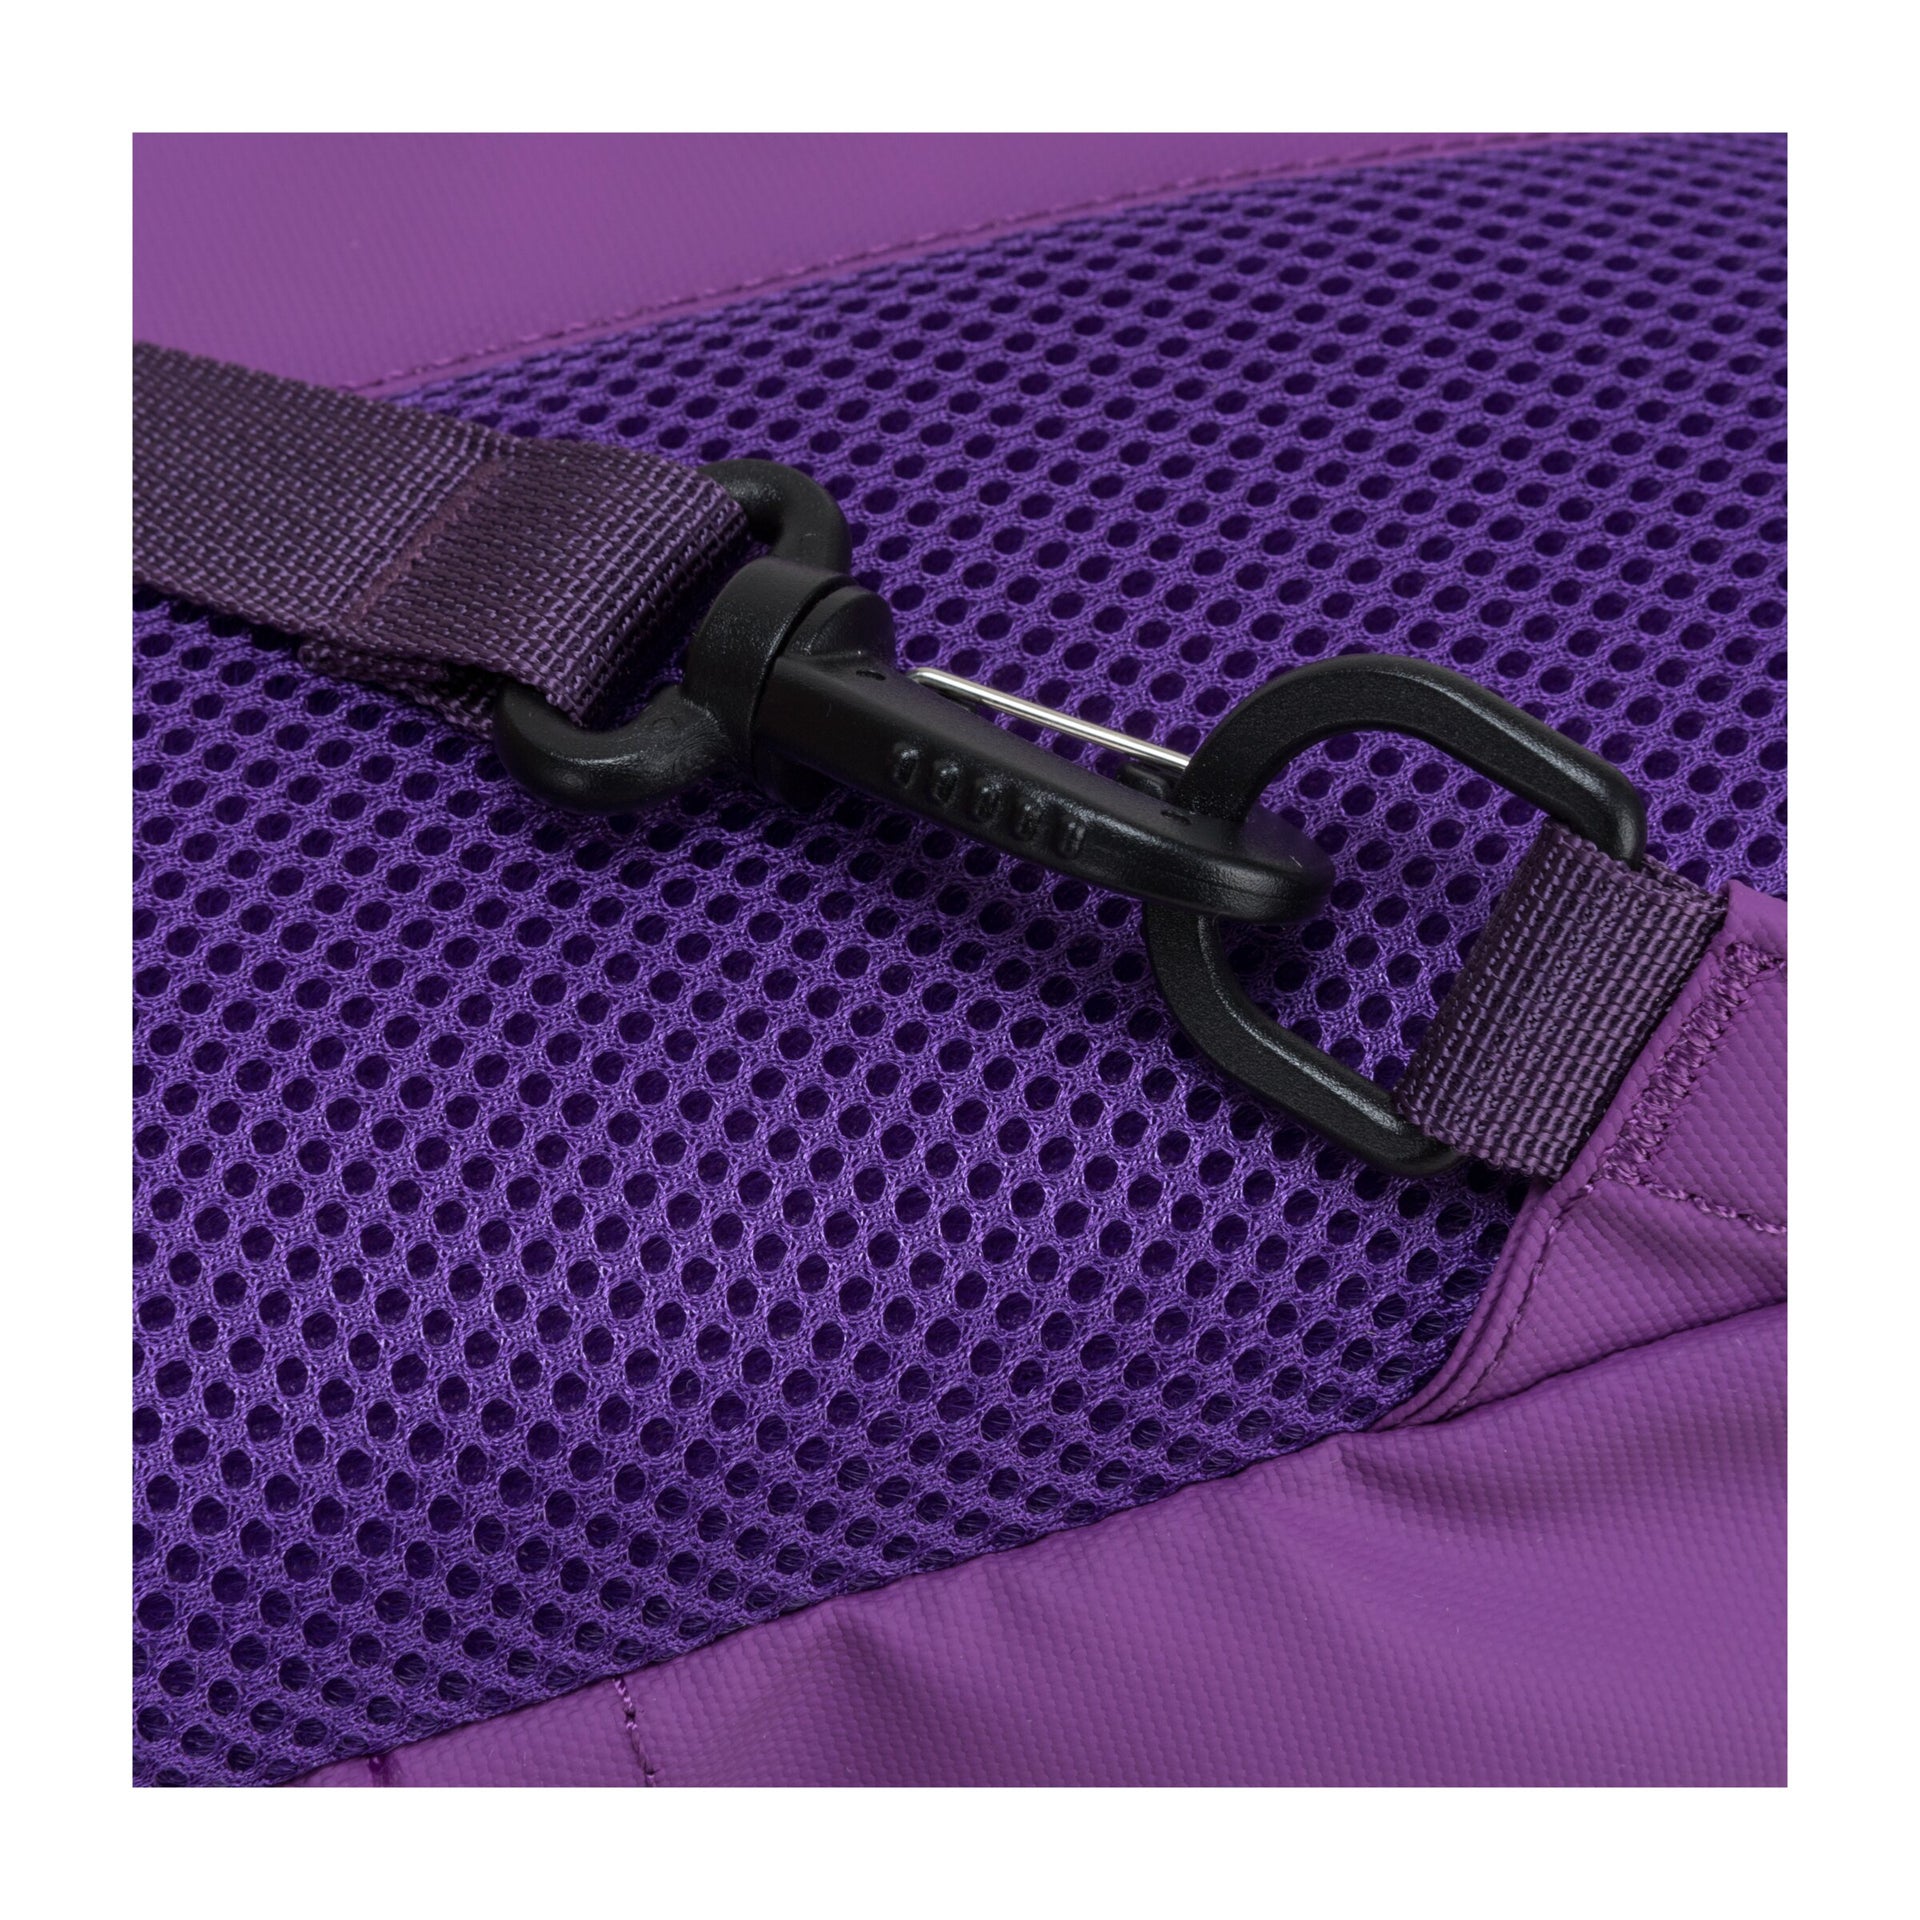 Hikerdelic Keser 14L Sling Backpack - Purple